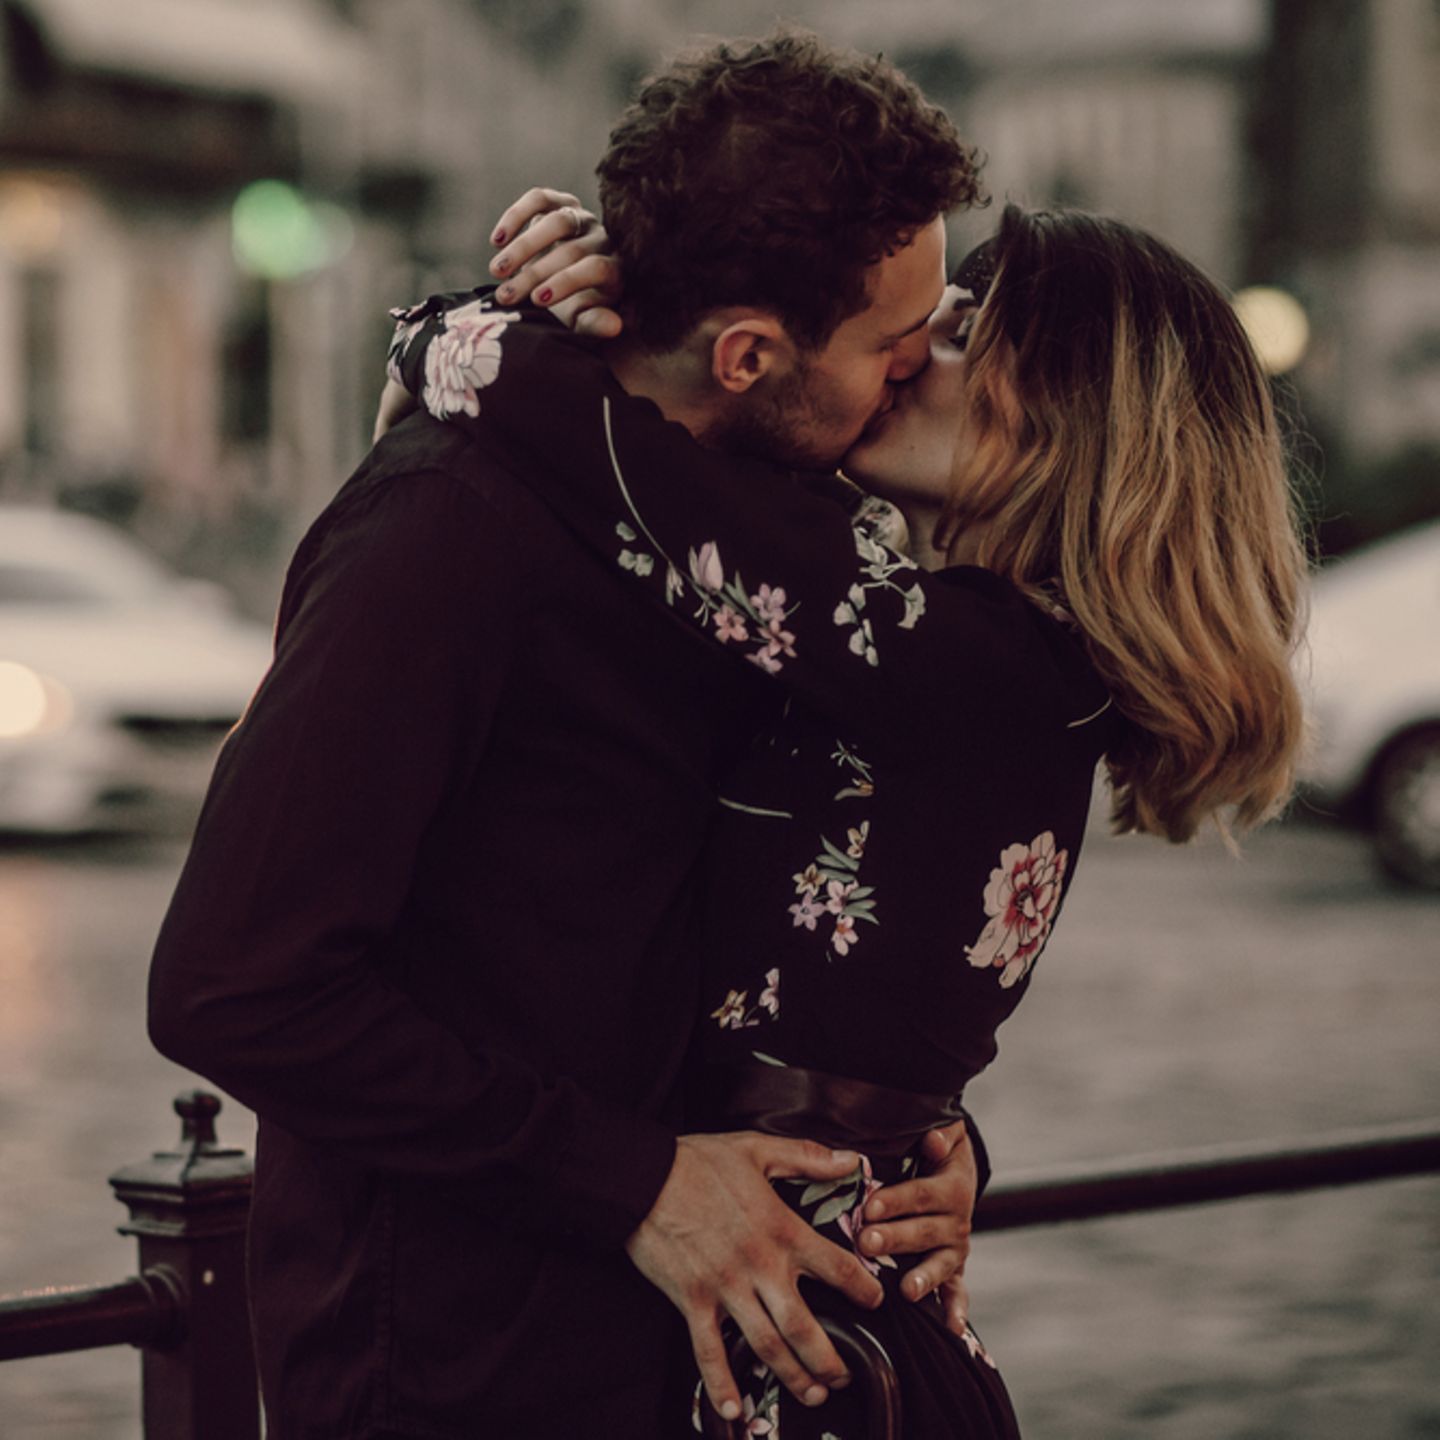 Eheversprechen: praktische Tipps und Beispiele: Paar küsst sich, dahinter verschwommene Straße und Autos